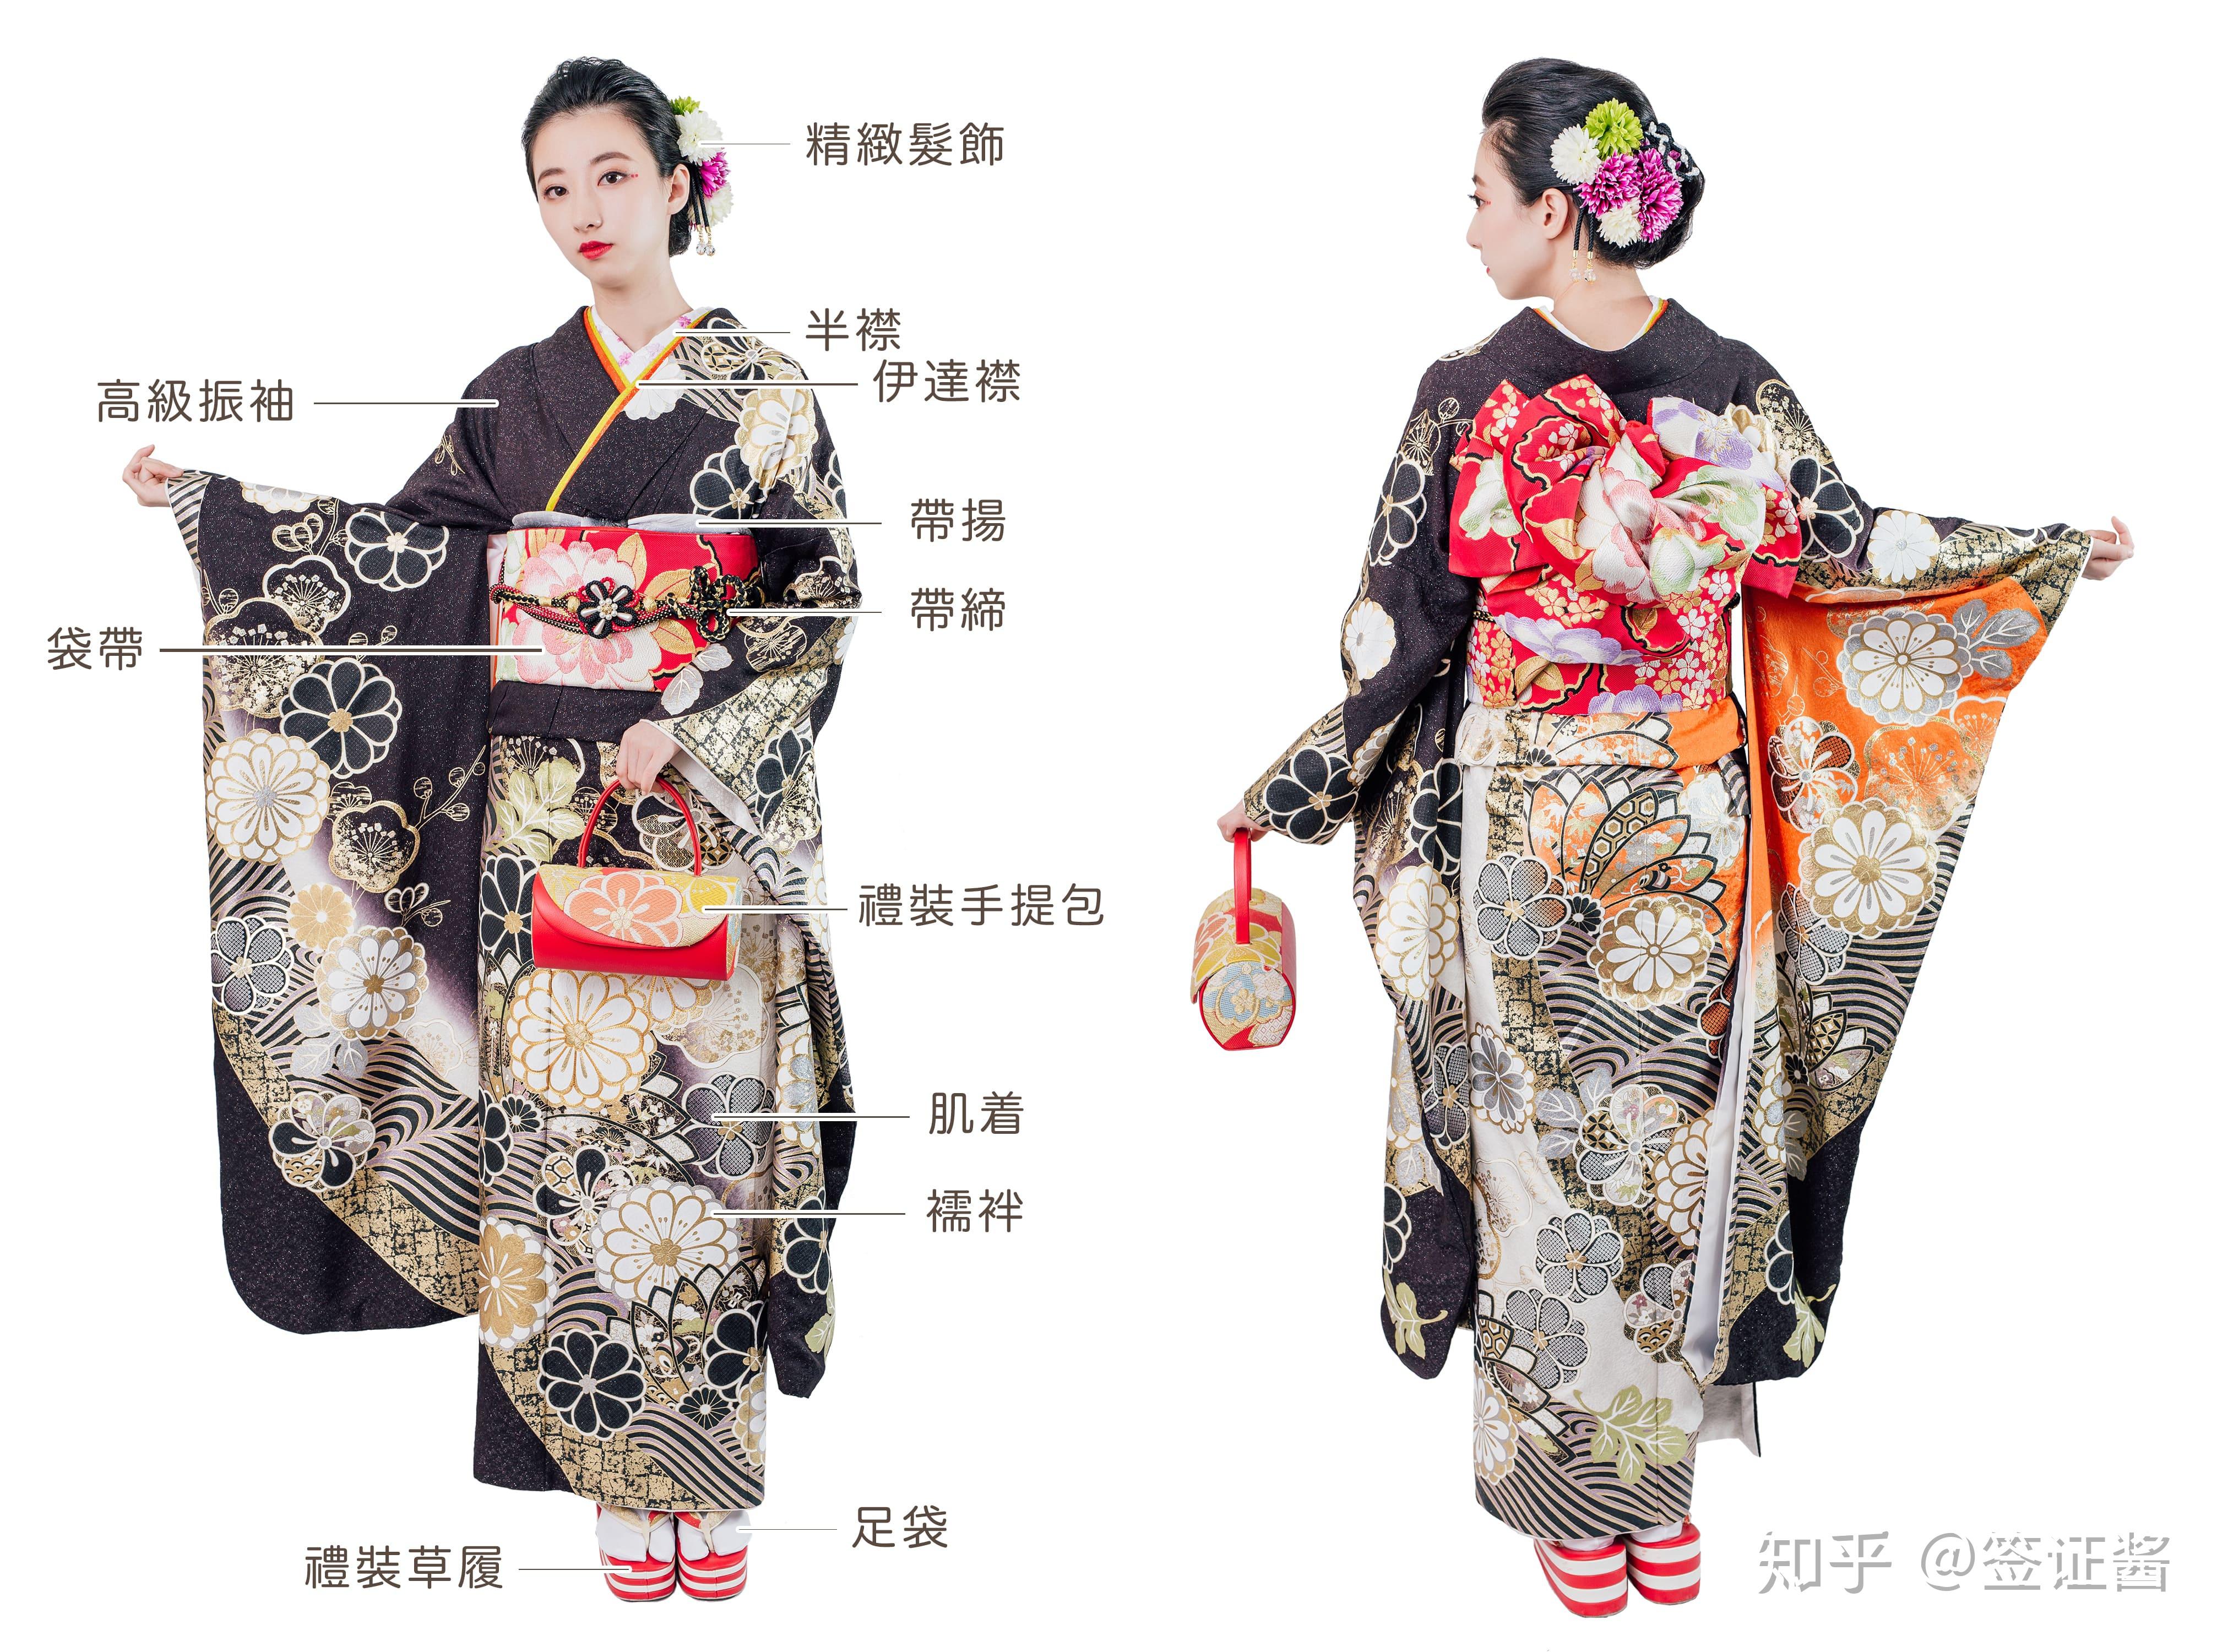 日本文化 | 和服与汉服的差异之处 - 知乎